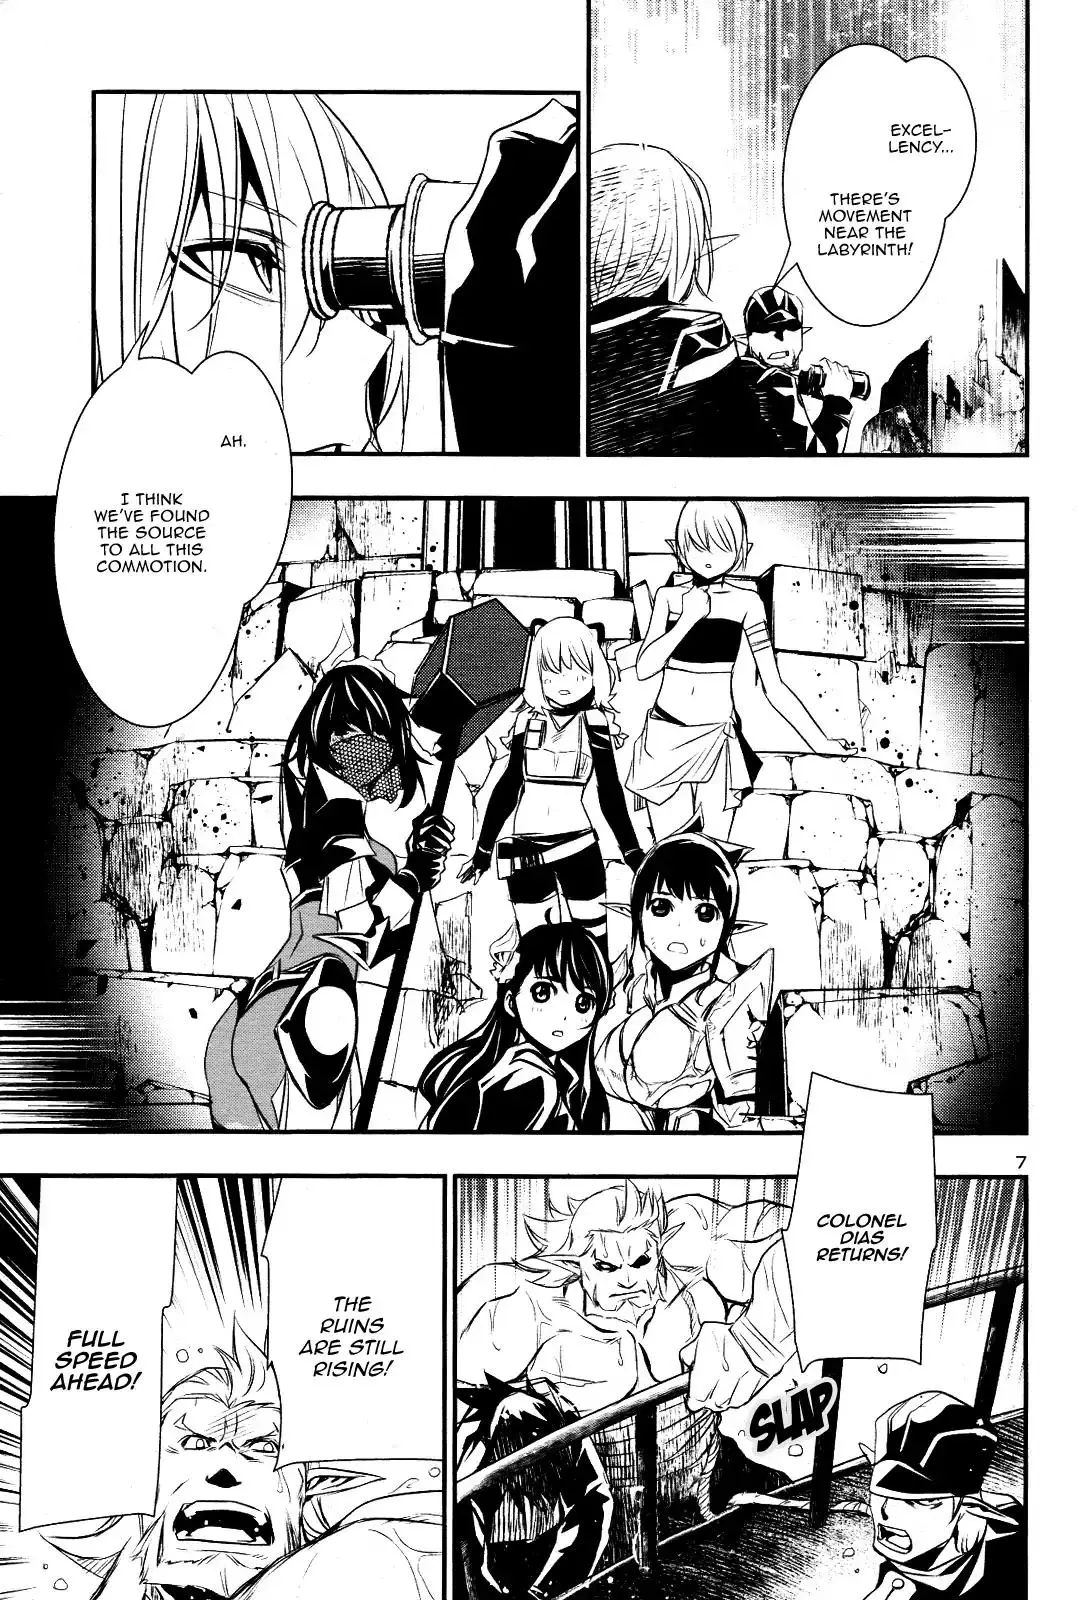 Shinju no Nectar - 21 page 5